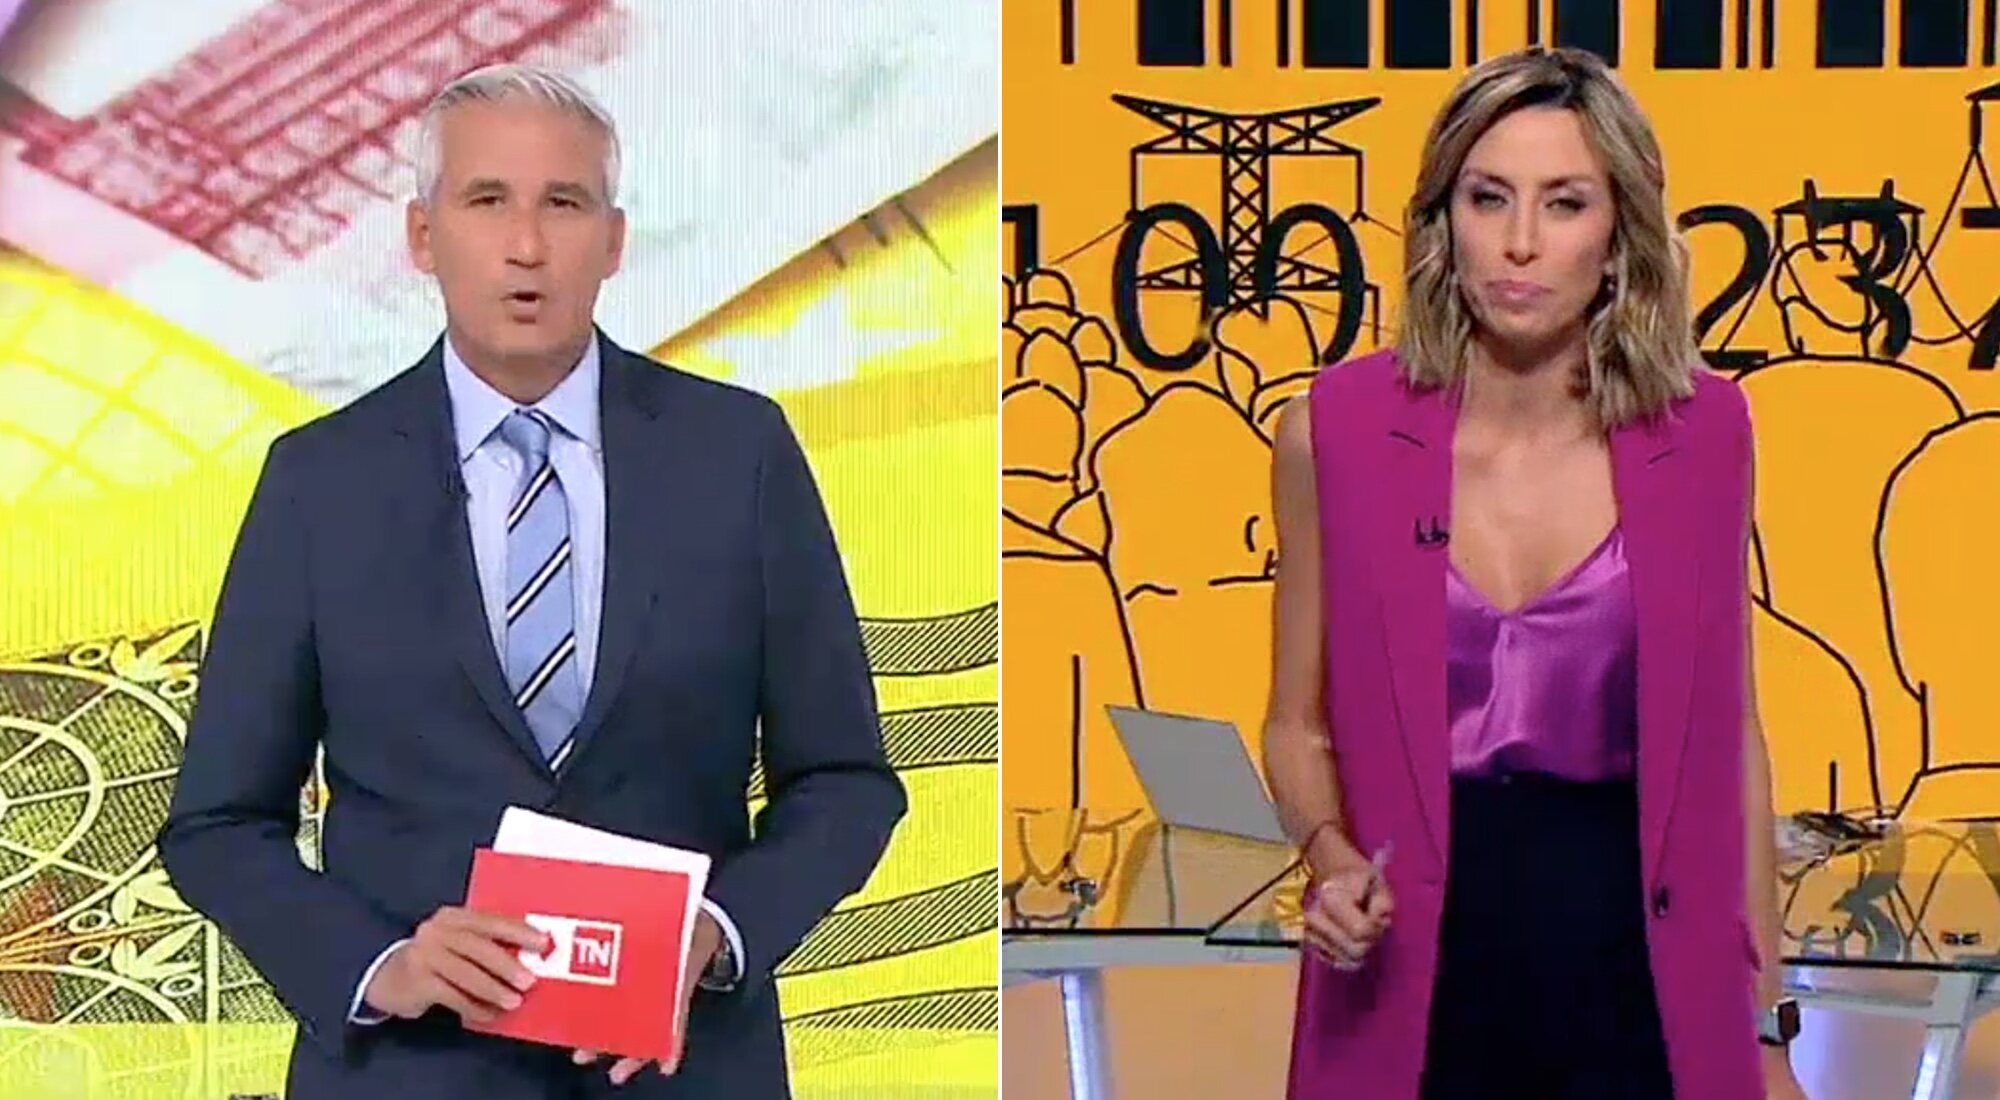 Víctor Arribas y Cristina Ortega, presentadores de 'Telenoticias 1' y 'Telenoticias 2'